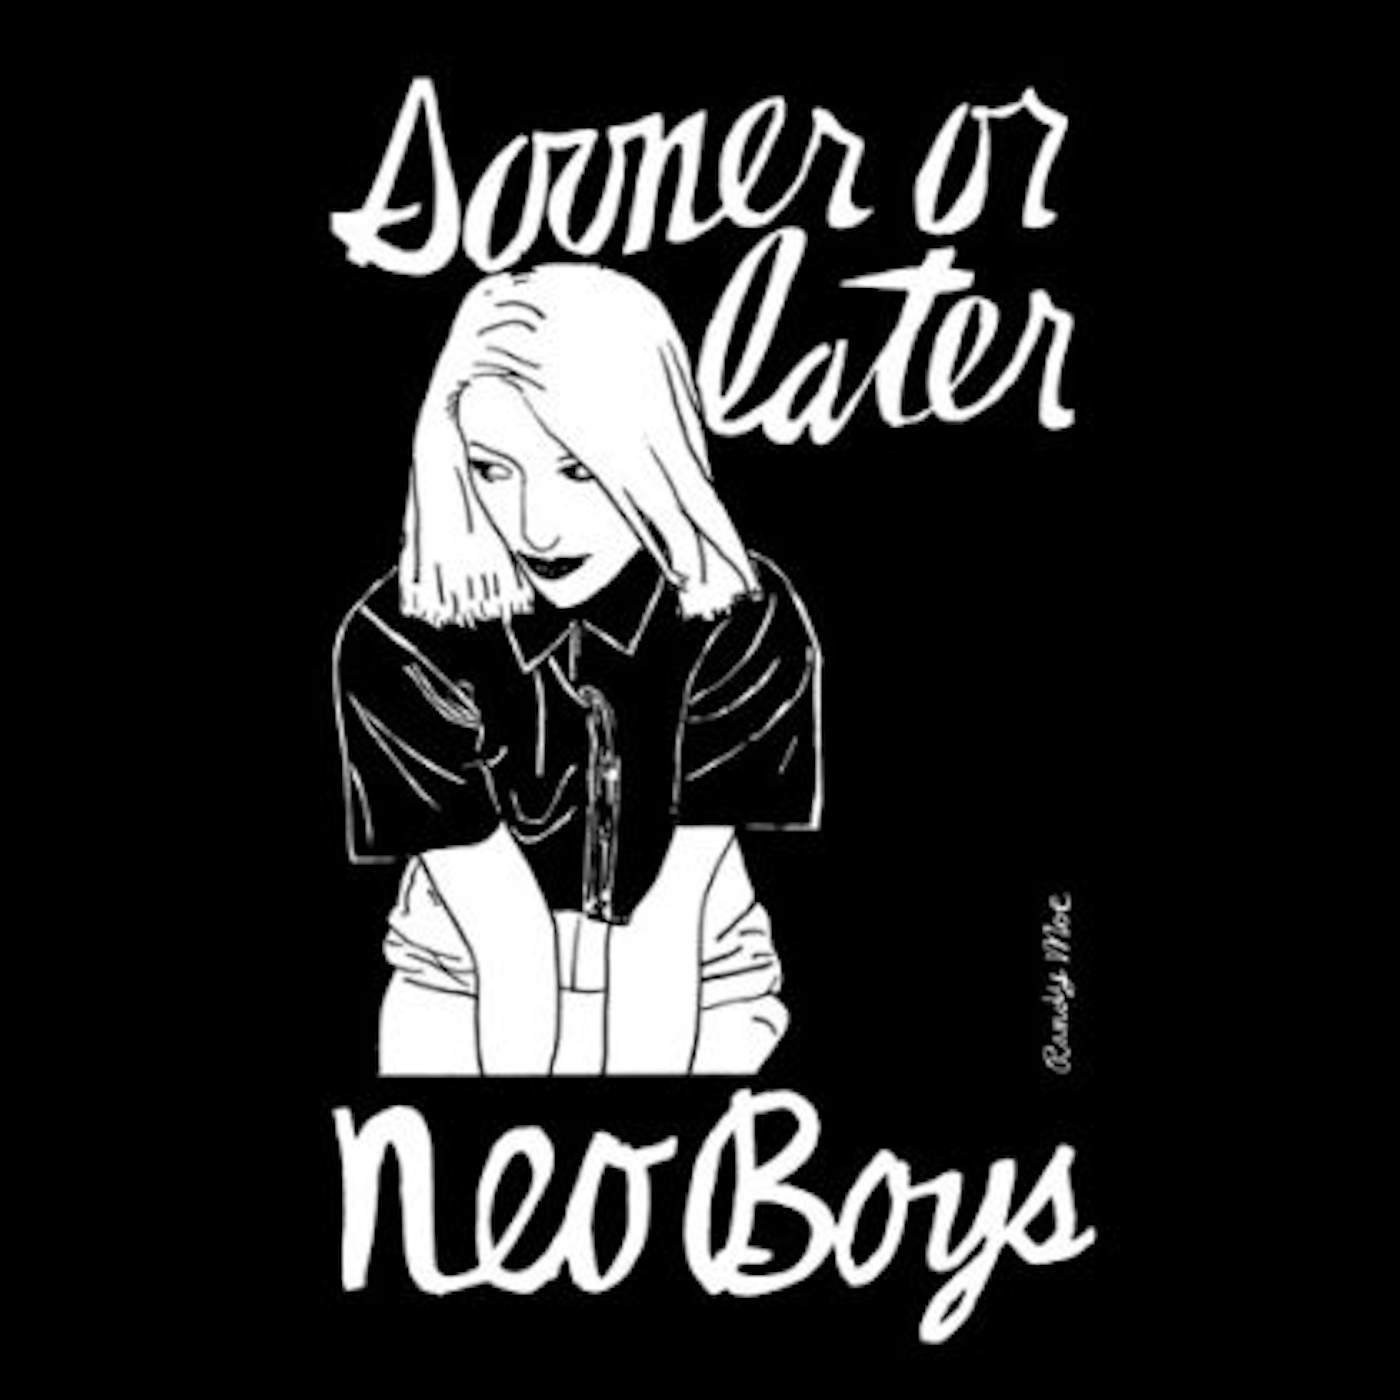 Neo Boys SOONER OR LATER CD